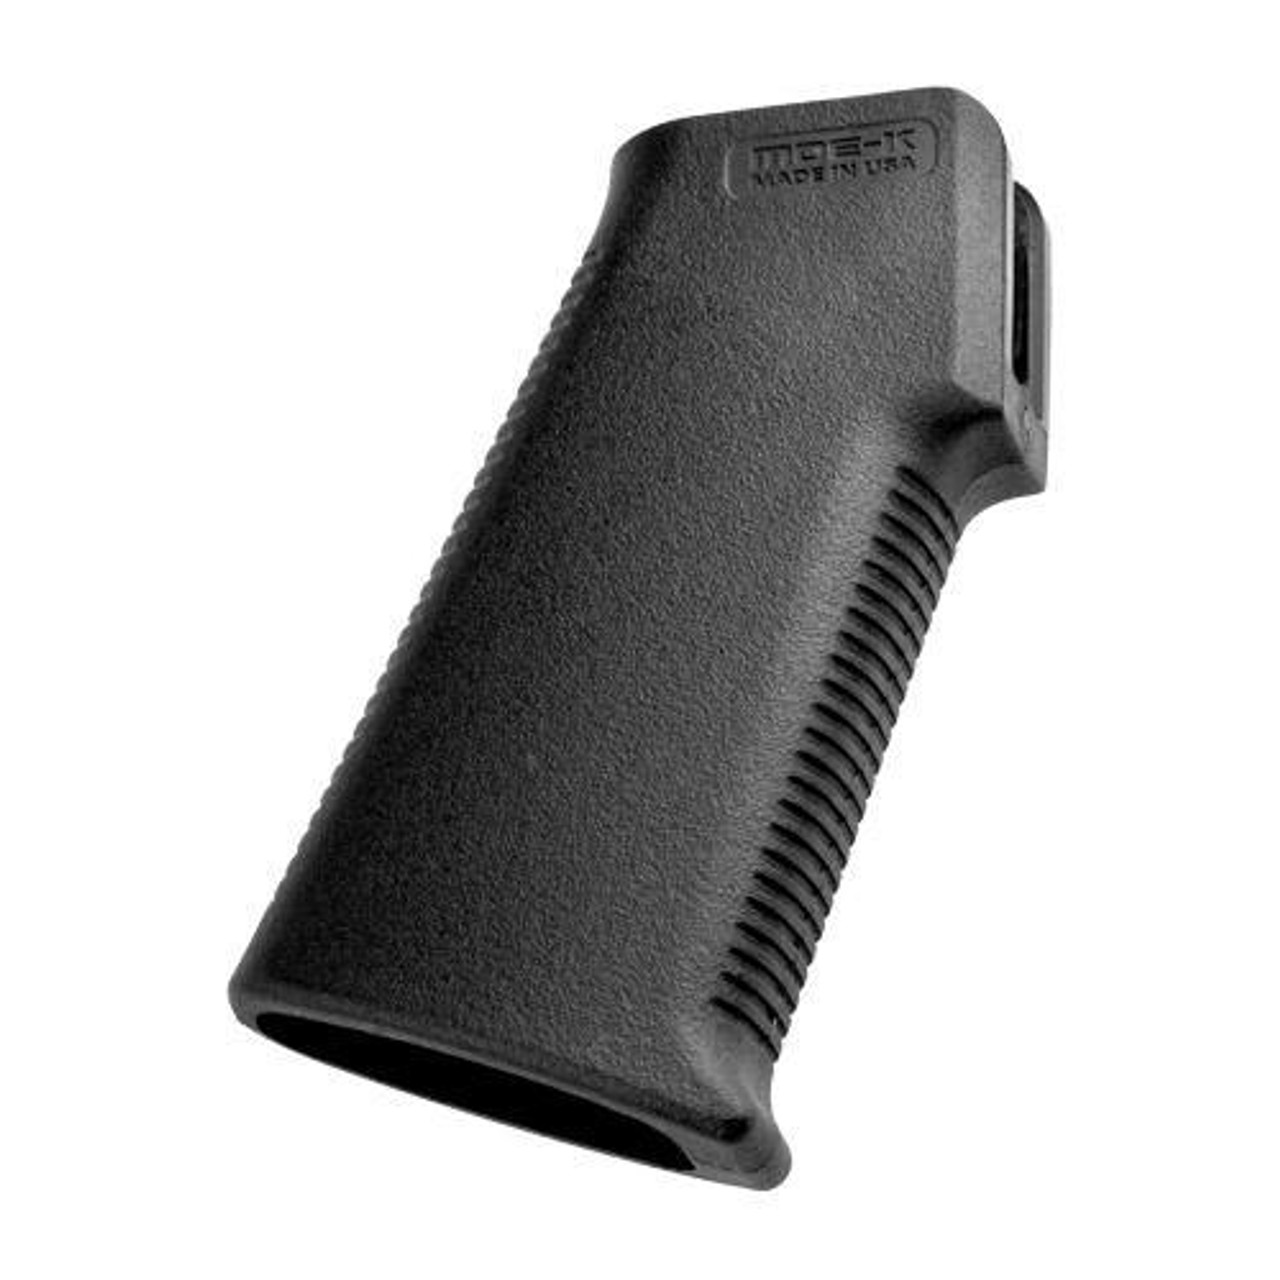 MOE-K™ Grip – AR15/M16, Black